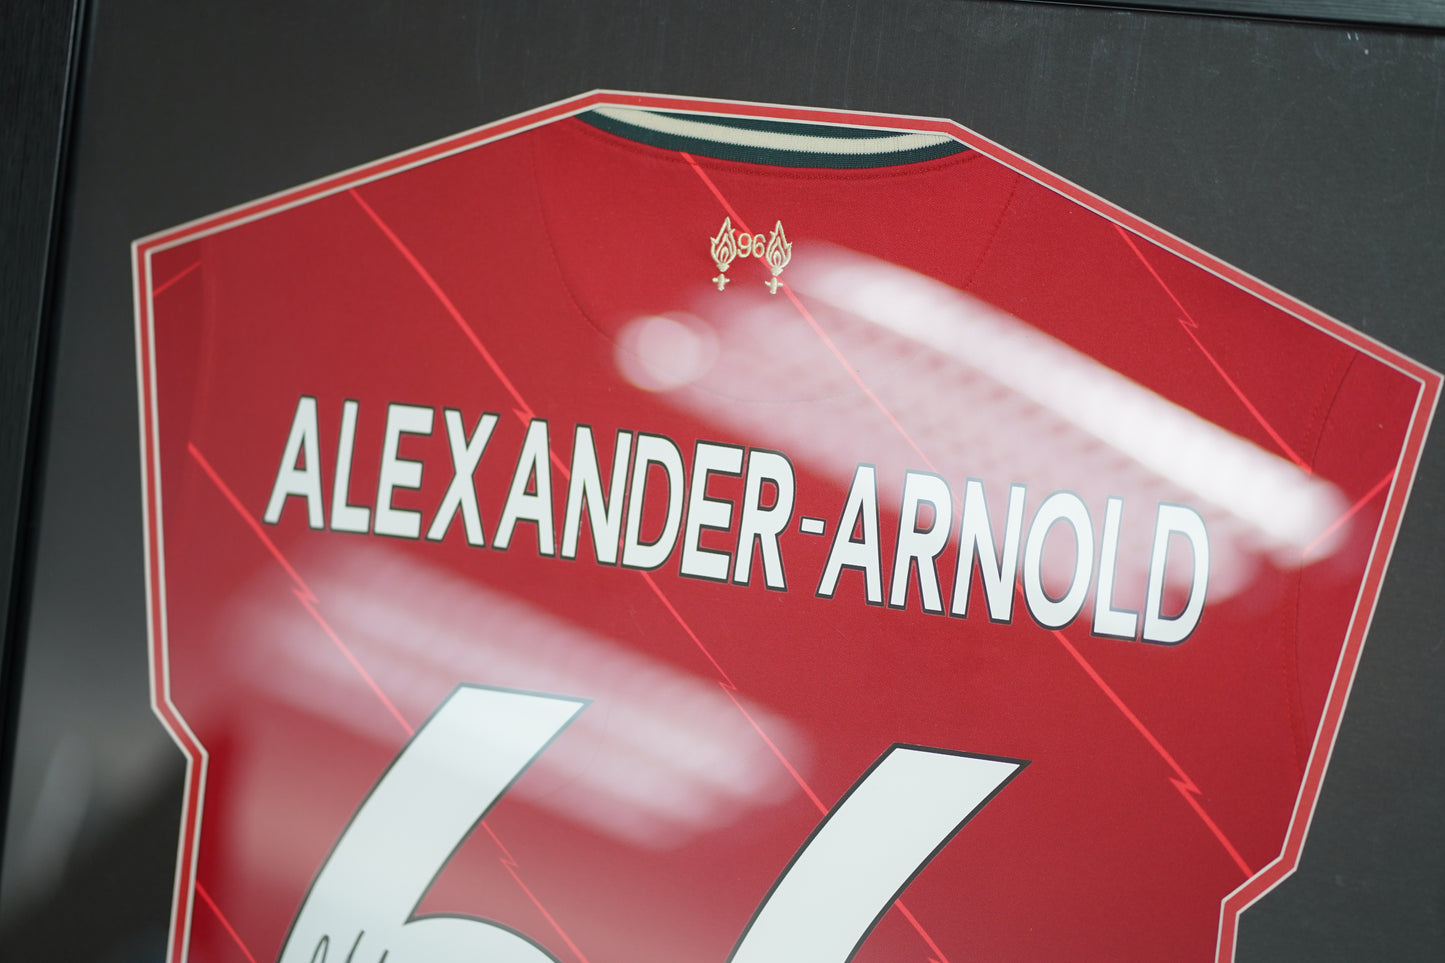 亞歷山大·阿諾德 Trent Alexander-Arnold 利物浦 主場球衣裱框(背簽)